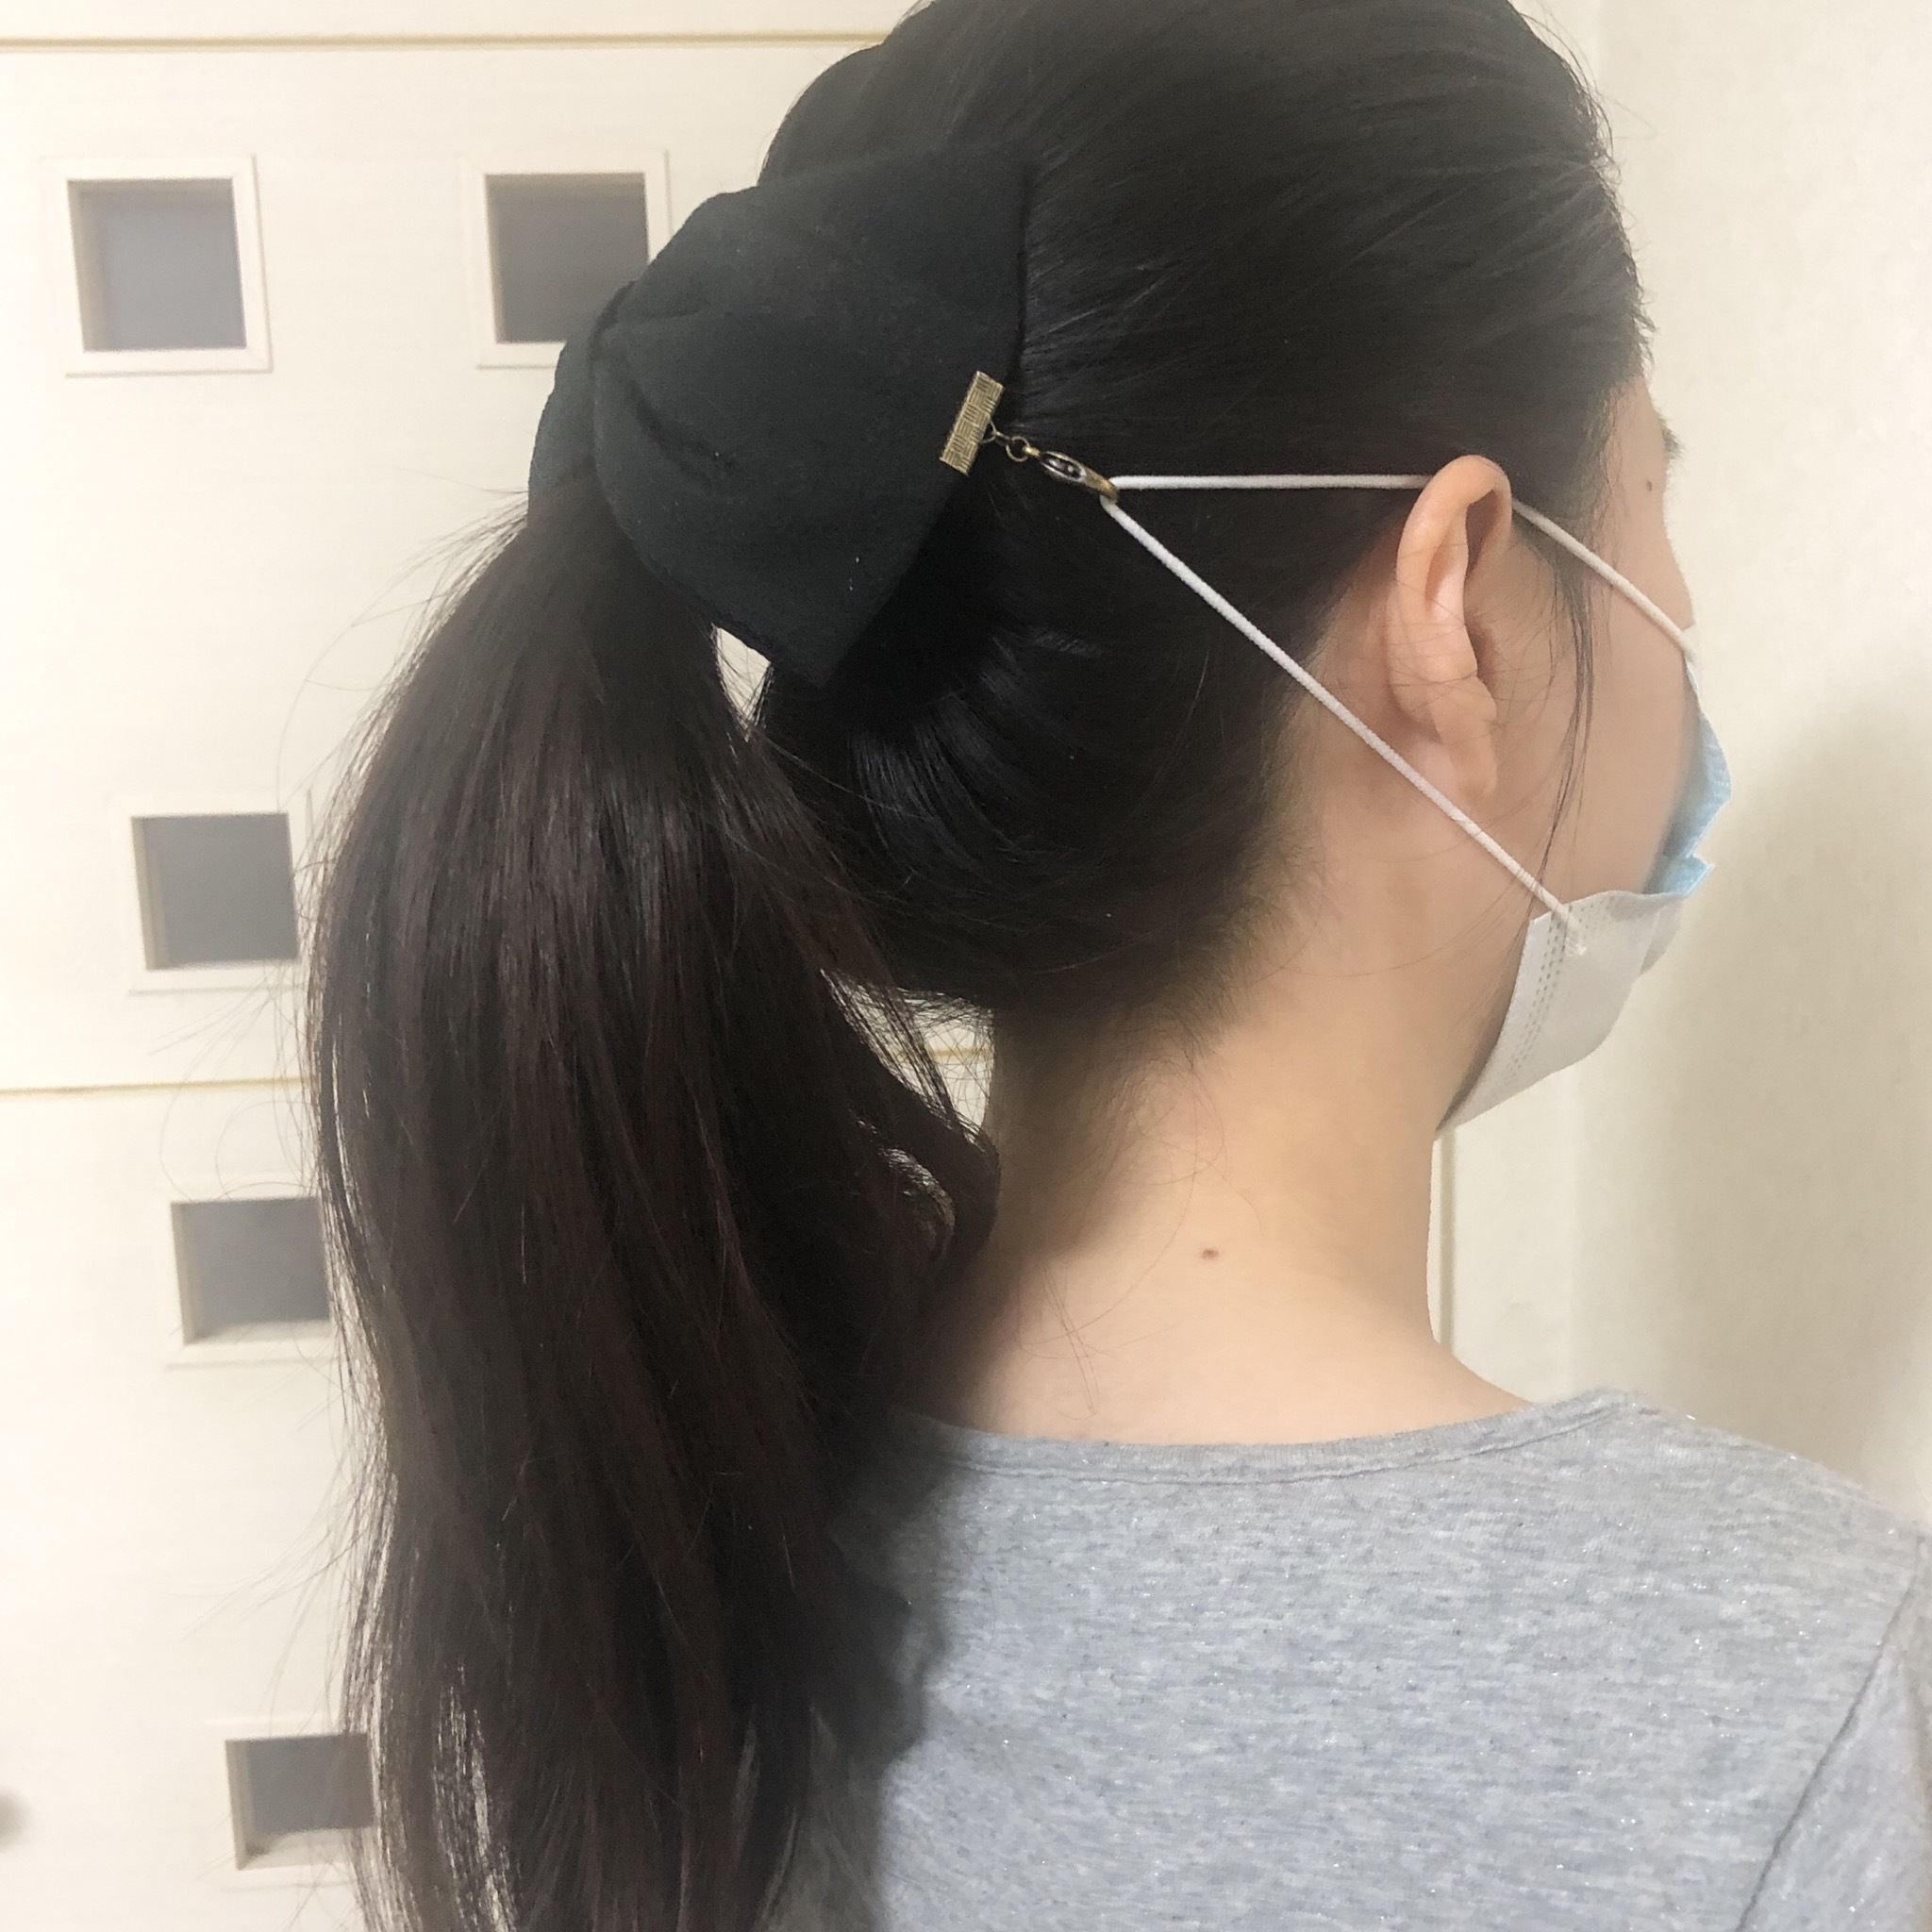 マスク留めヘアアクセサリー 大人可愛いリボン型 クリップ付き 耳が痛くならない ストラップ ストッパー マスクレット チャーム 京都の伝統工芸を用いた着物や帯生地で製作したグッズブランドaturae あつらえ 京都のネットショップです